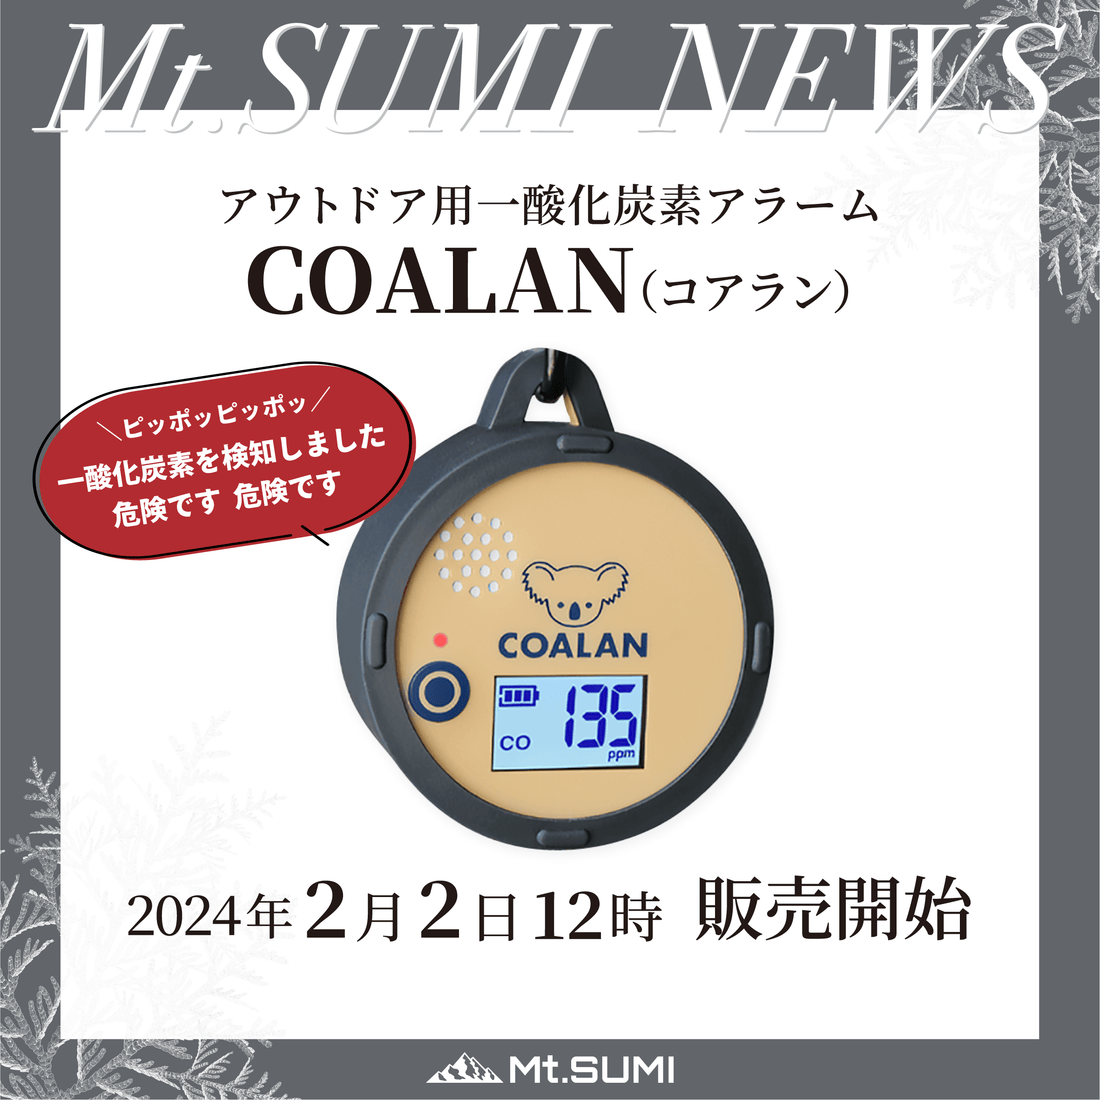 【製品情報】アウトドアに特化した一酸化炭素アラーム「COALAN (コアラン)」 2月2日(金) 12時 取扱開始